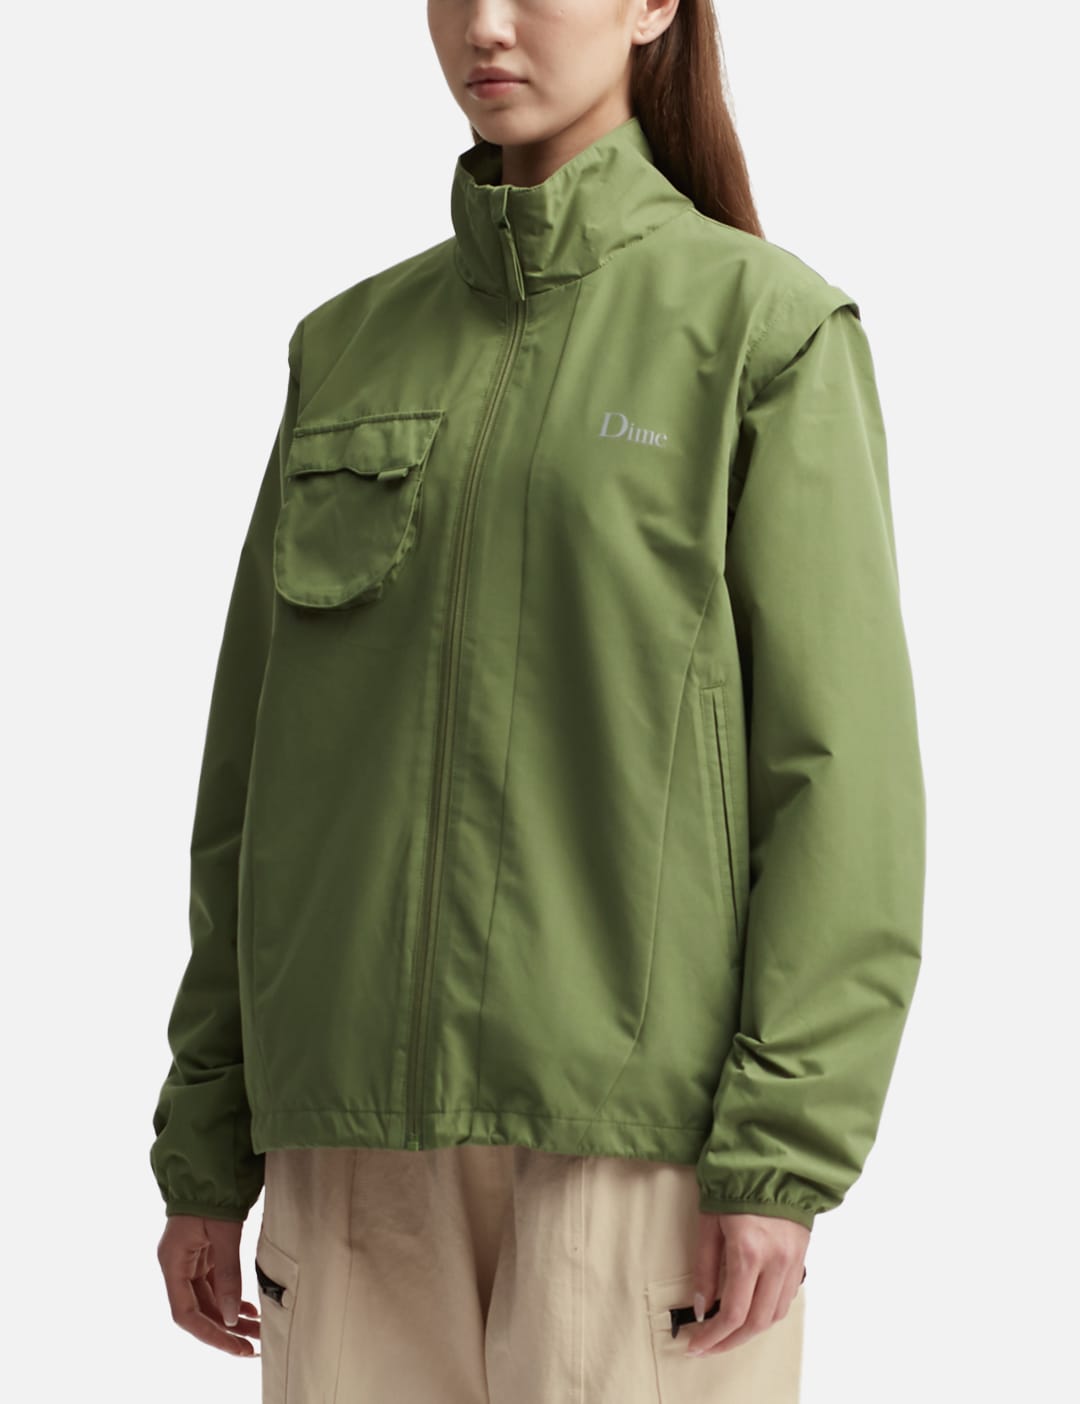 Hiking Zip-off Sleeves Jacket In Green